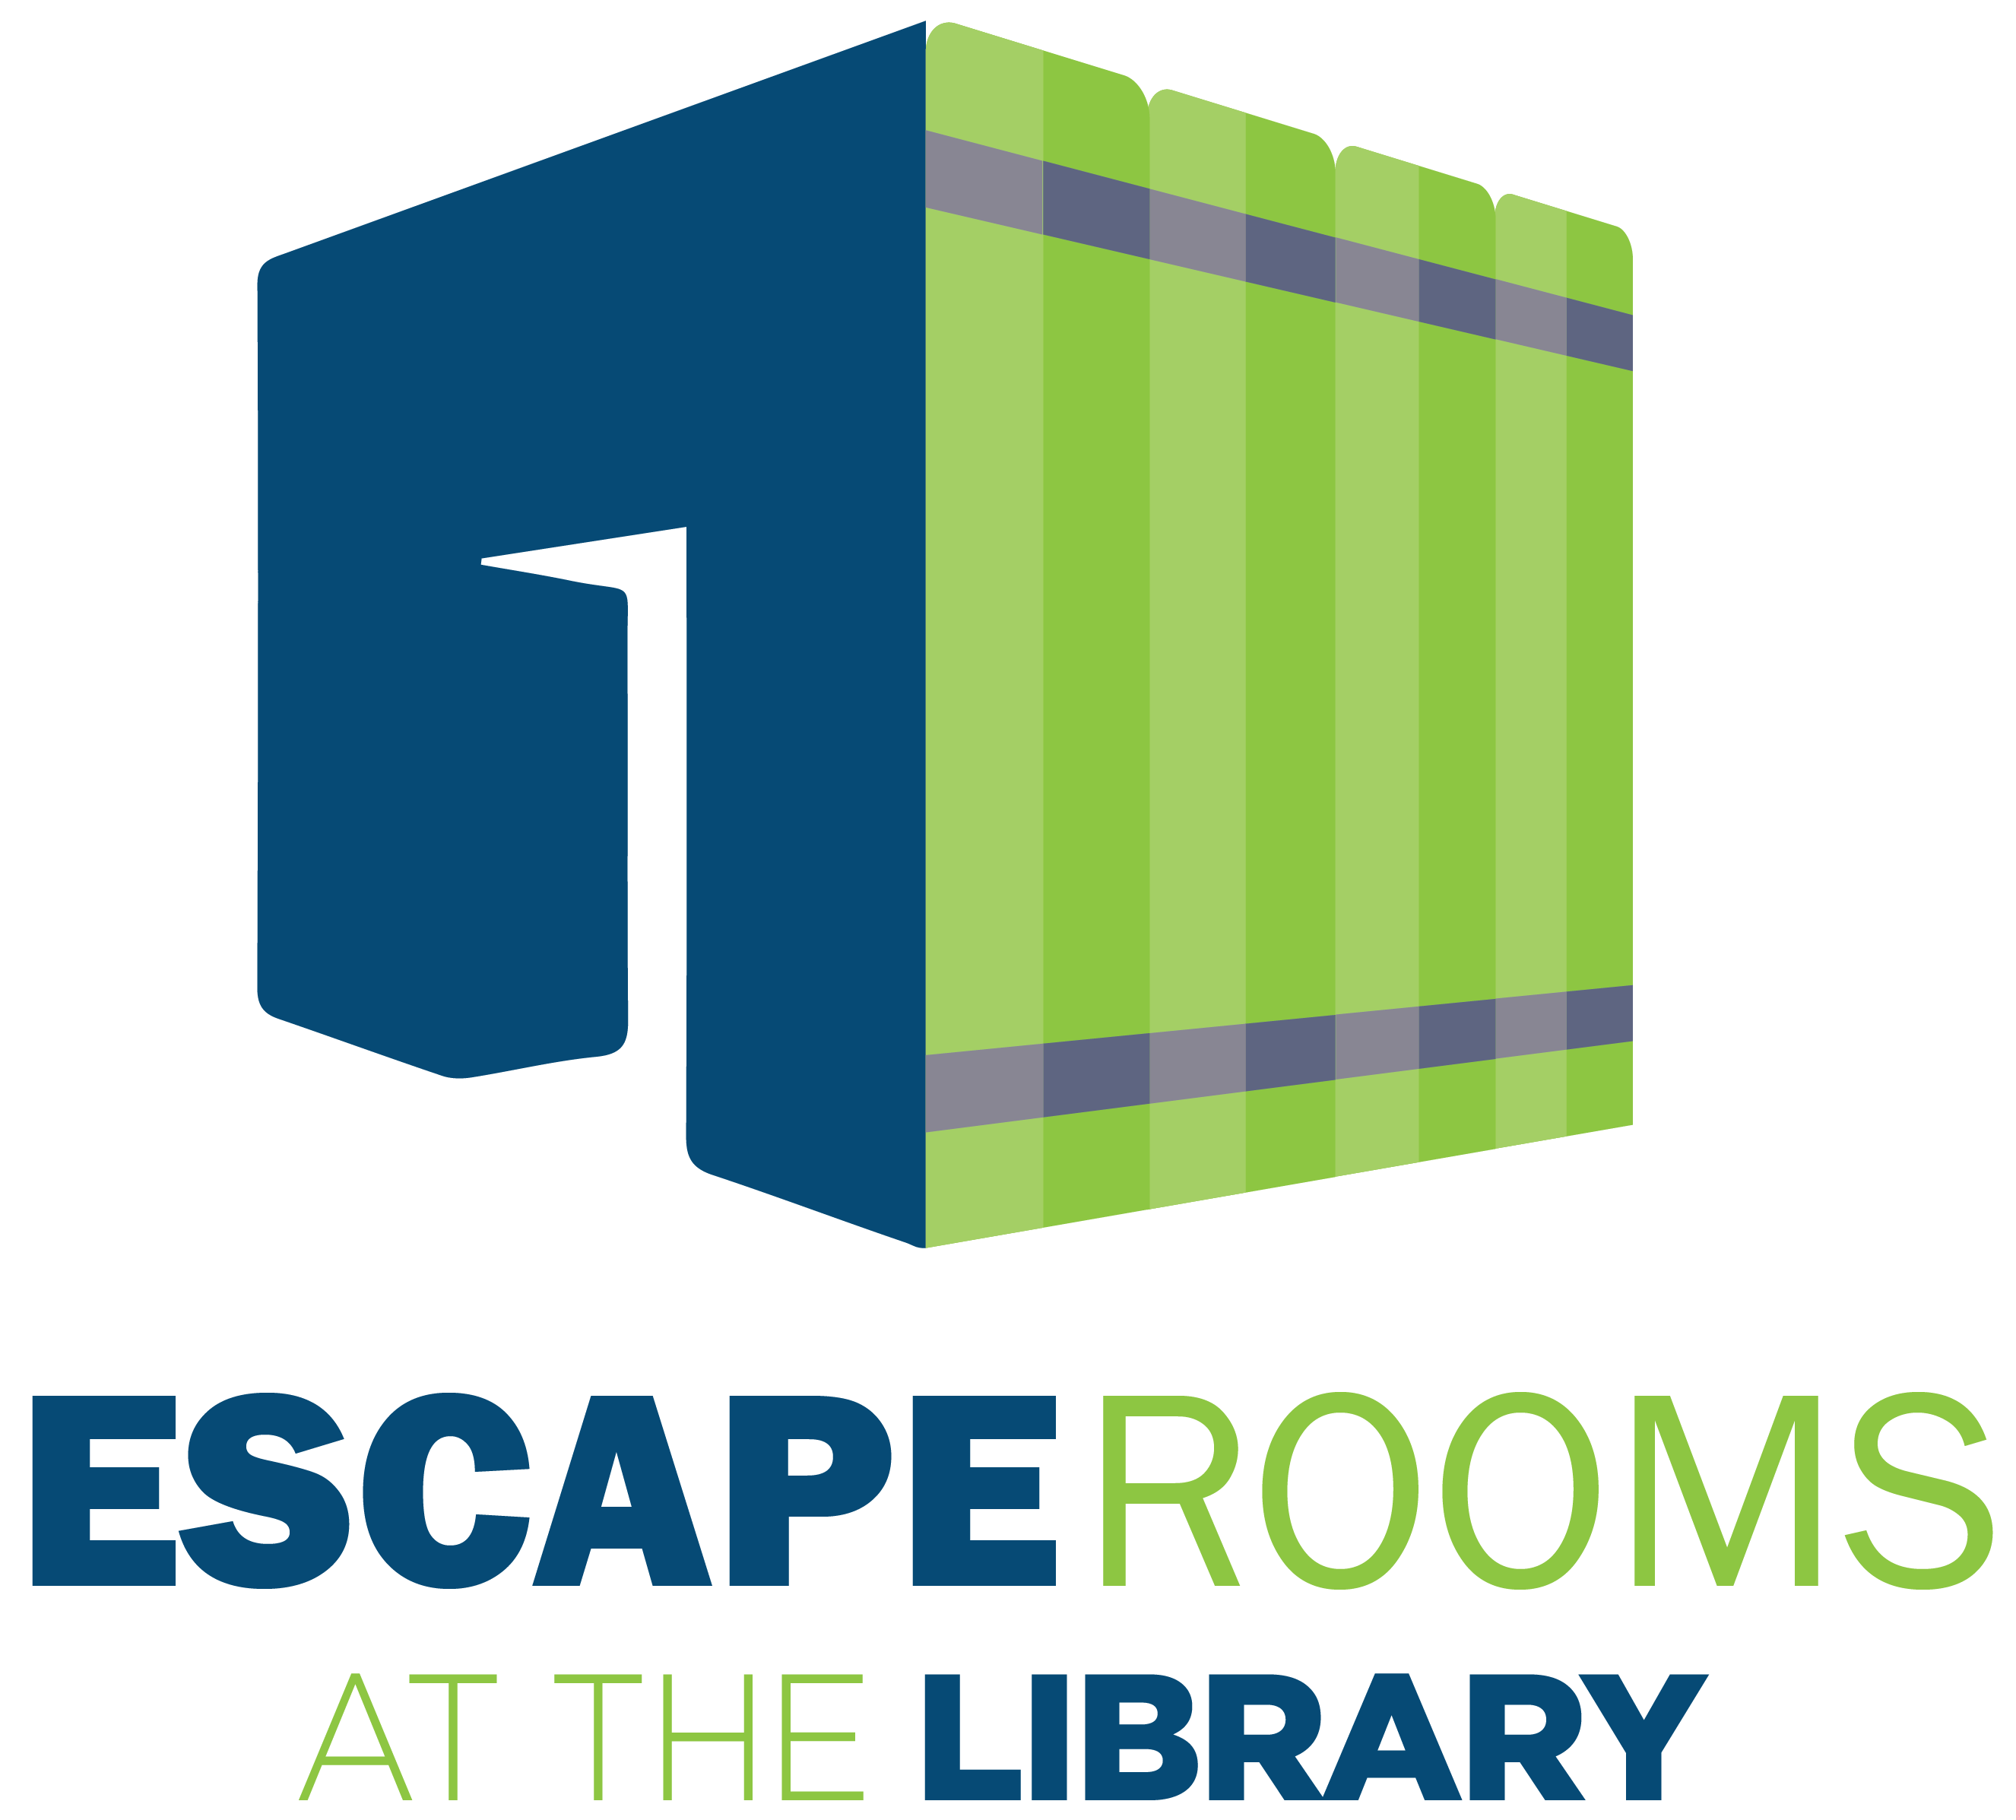 Escape Room graphic